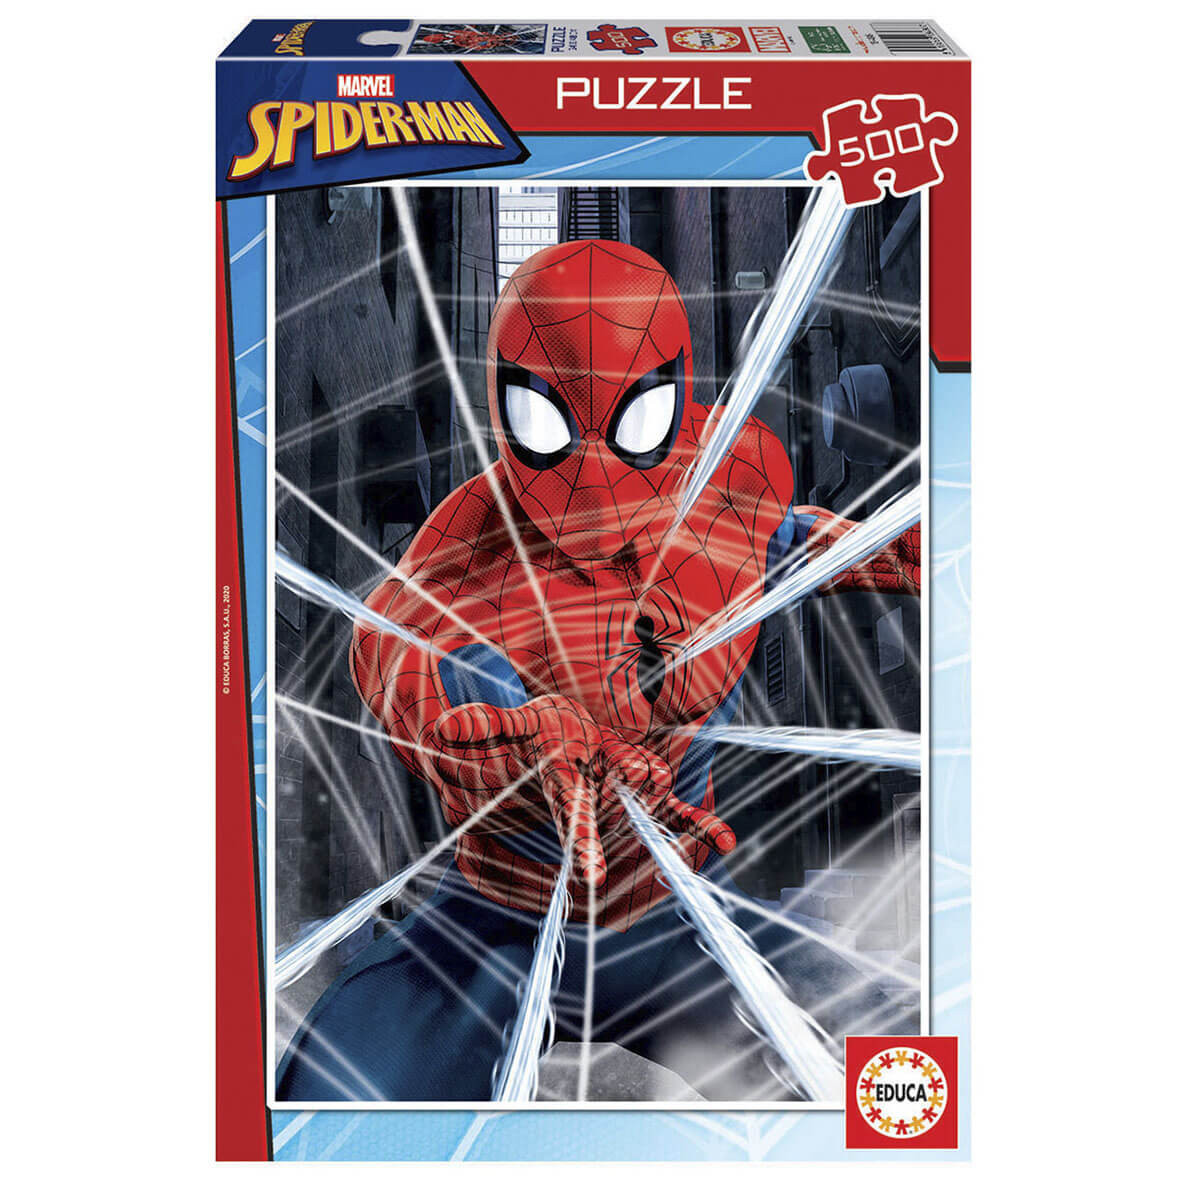 Puzzle Educa Borras spiderman 500